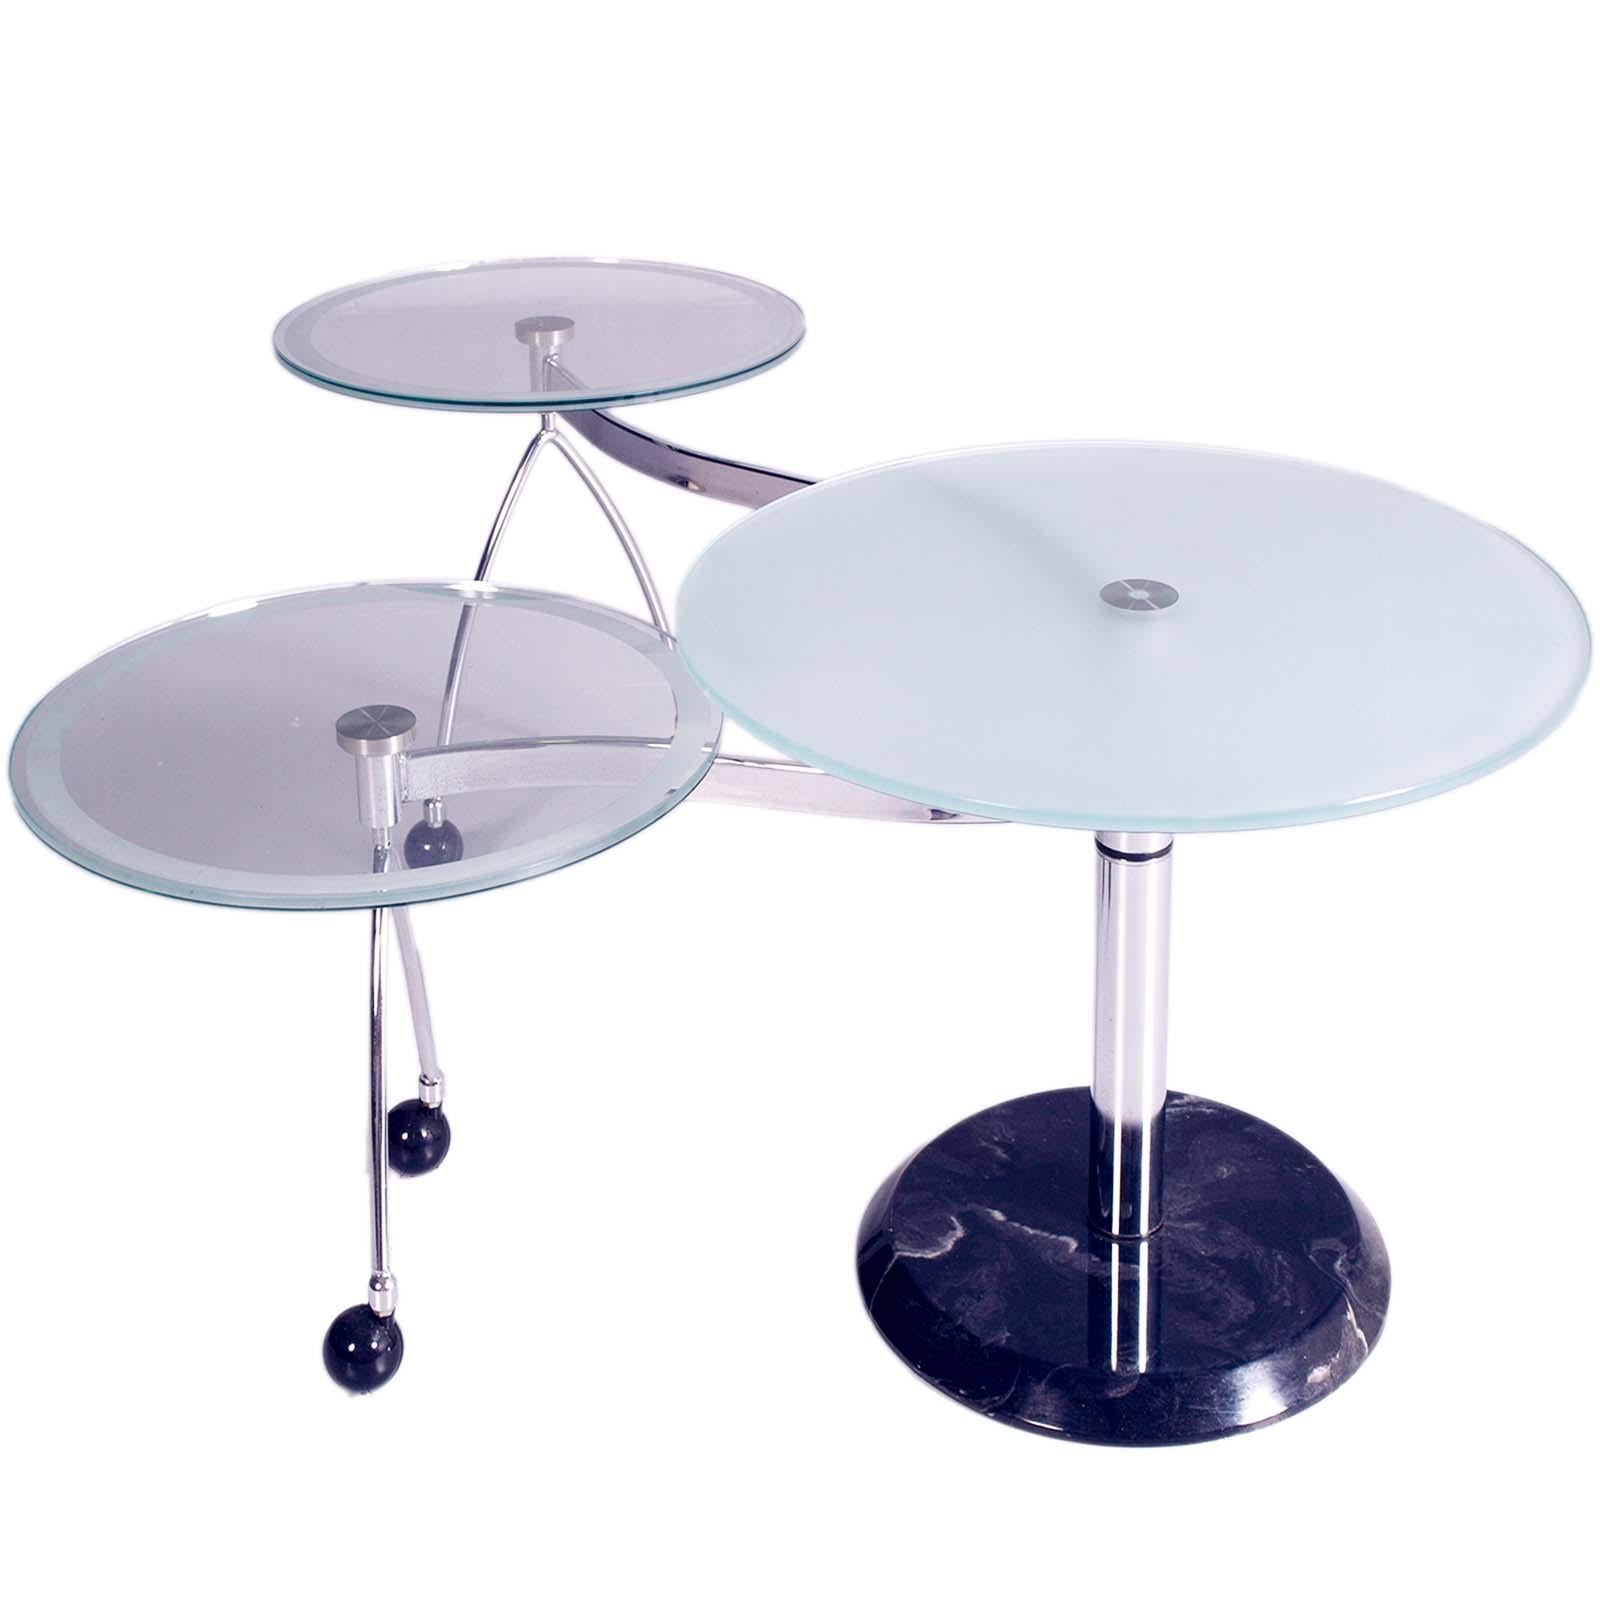 Fin du 20e siècle Table basse ronde des années 1970 avec deux satellites rotatifs, cristal, chrome et marbre en vente